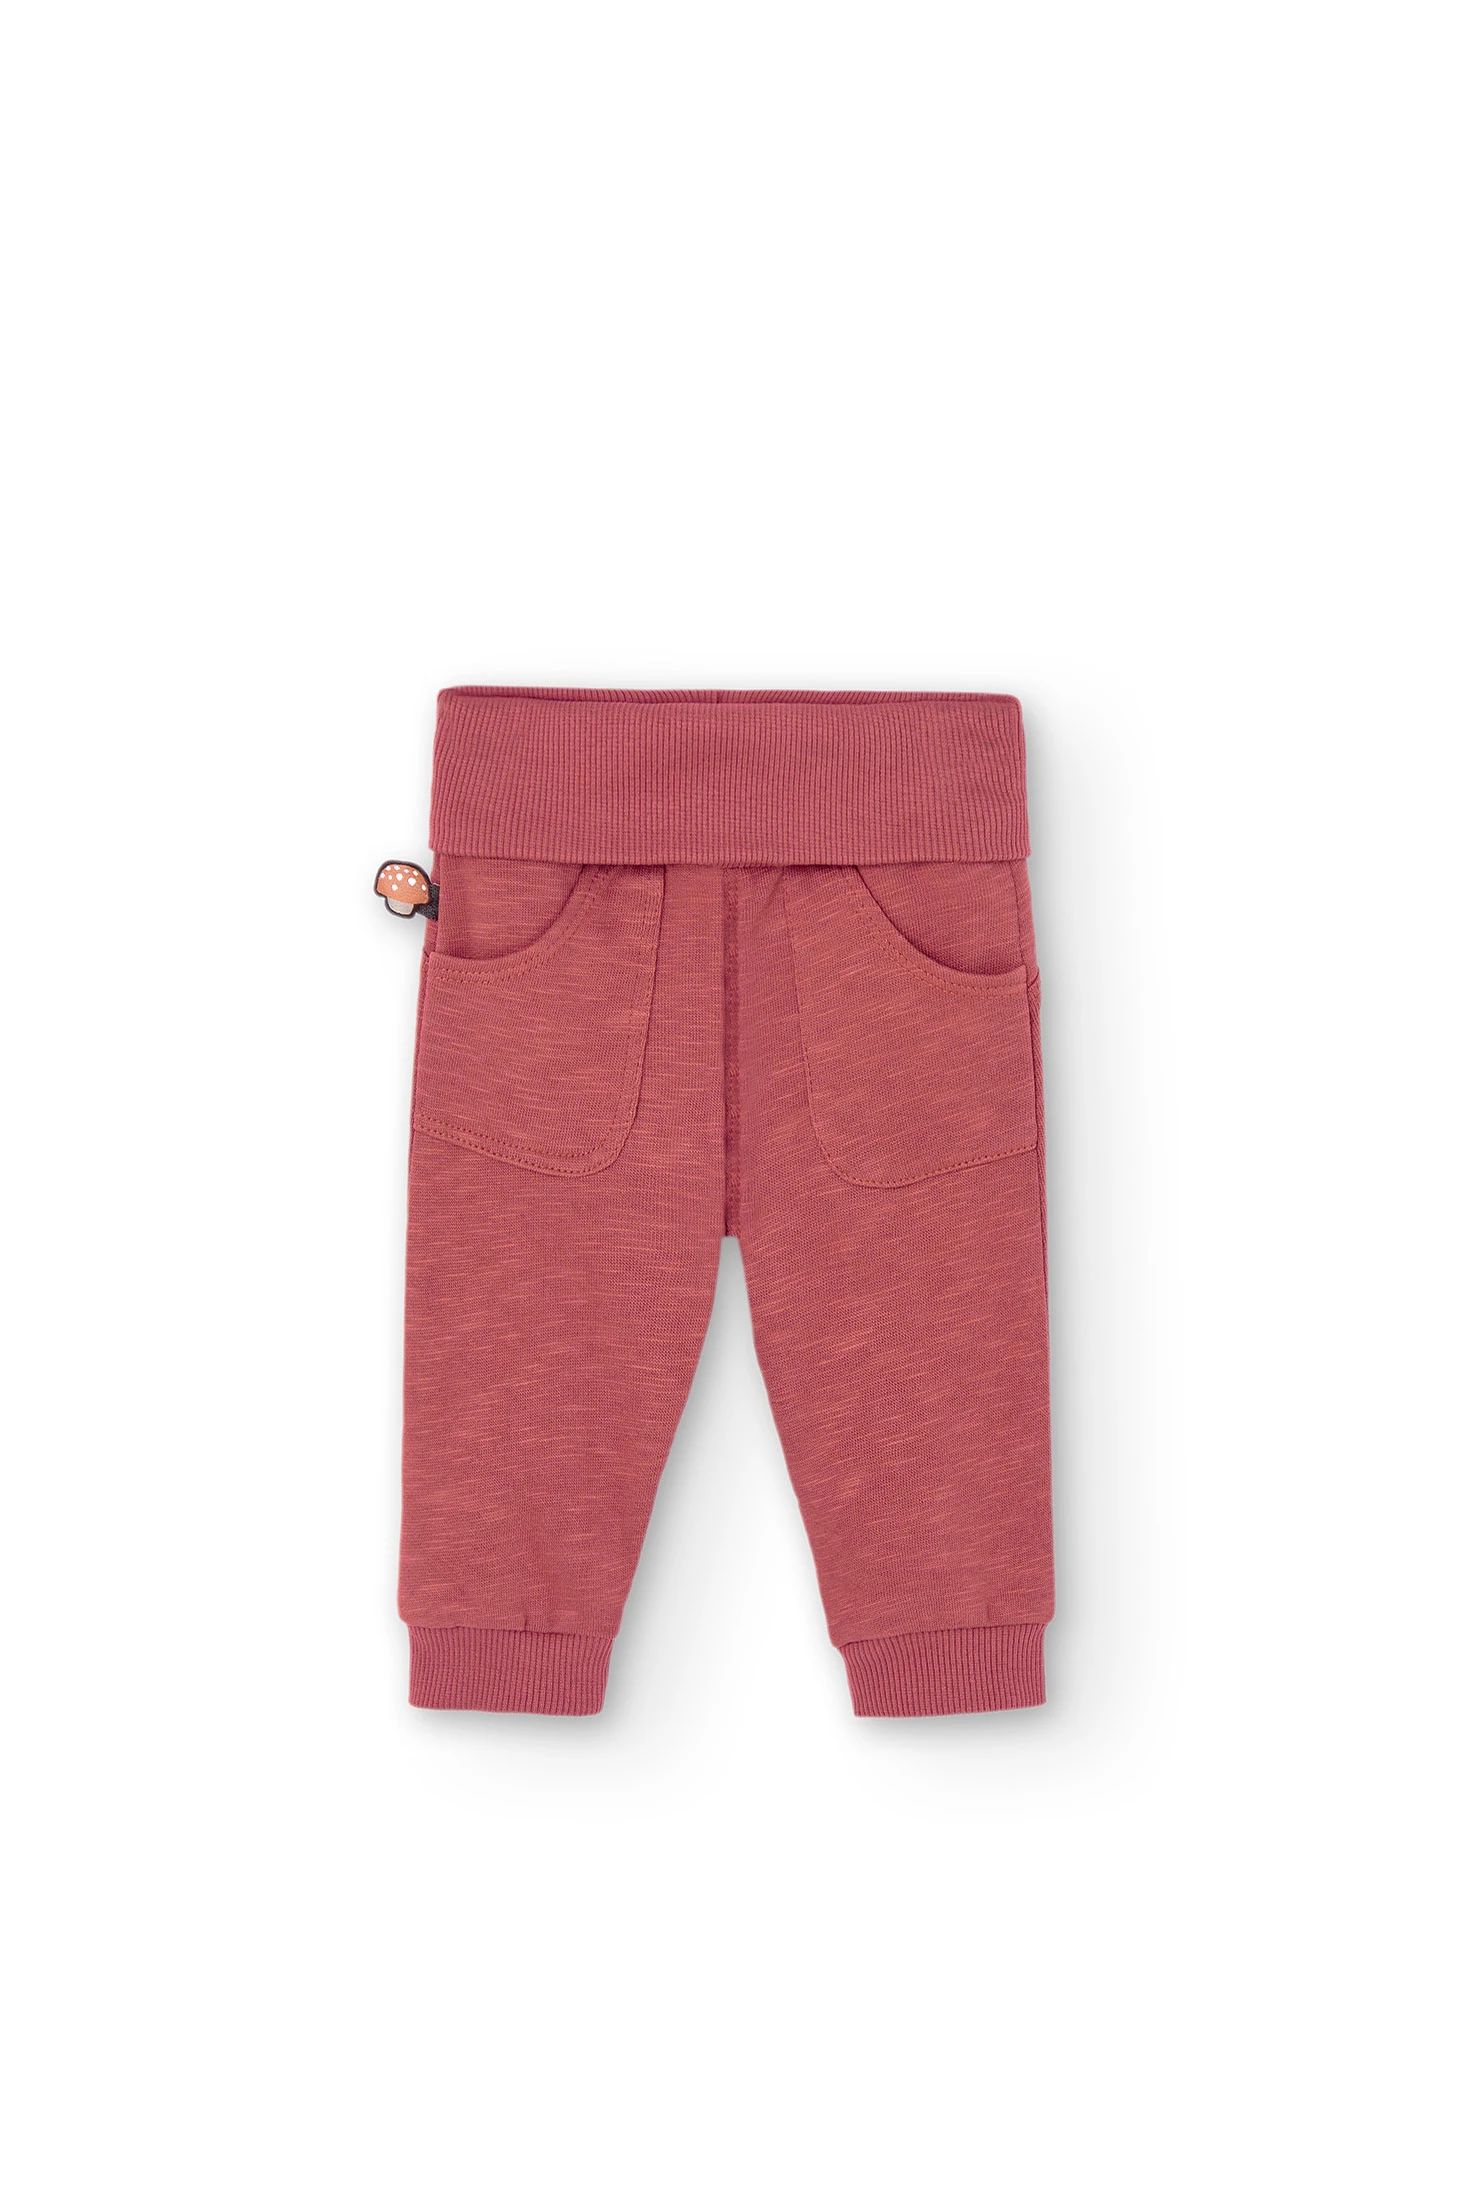 Pantalon chandal de niño – Tienda de Ropa Infantil online – Calabuch